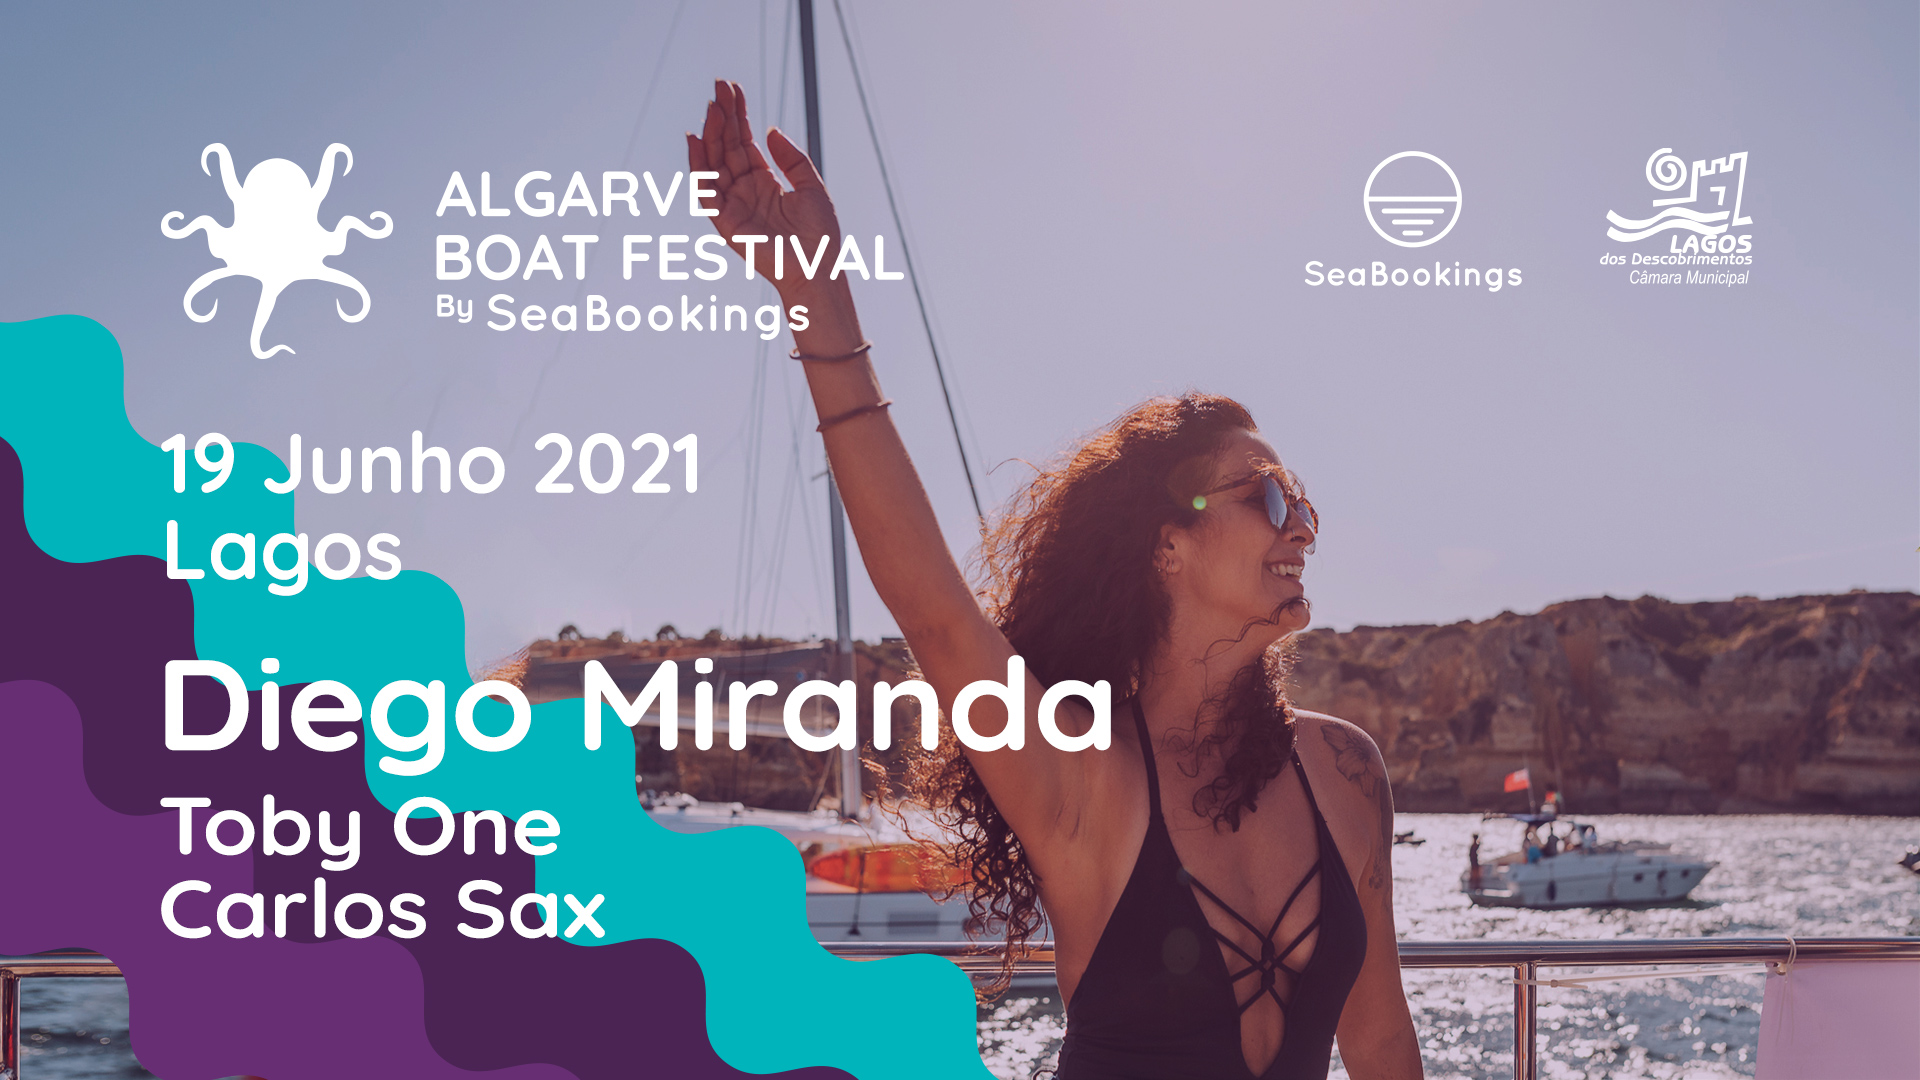 Algarve Boat Festival 2021